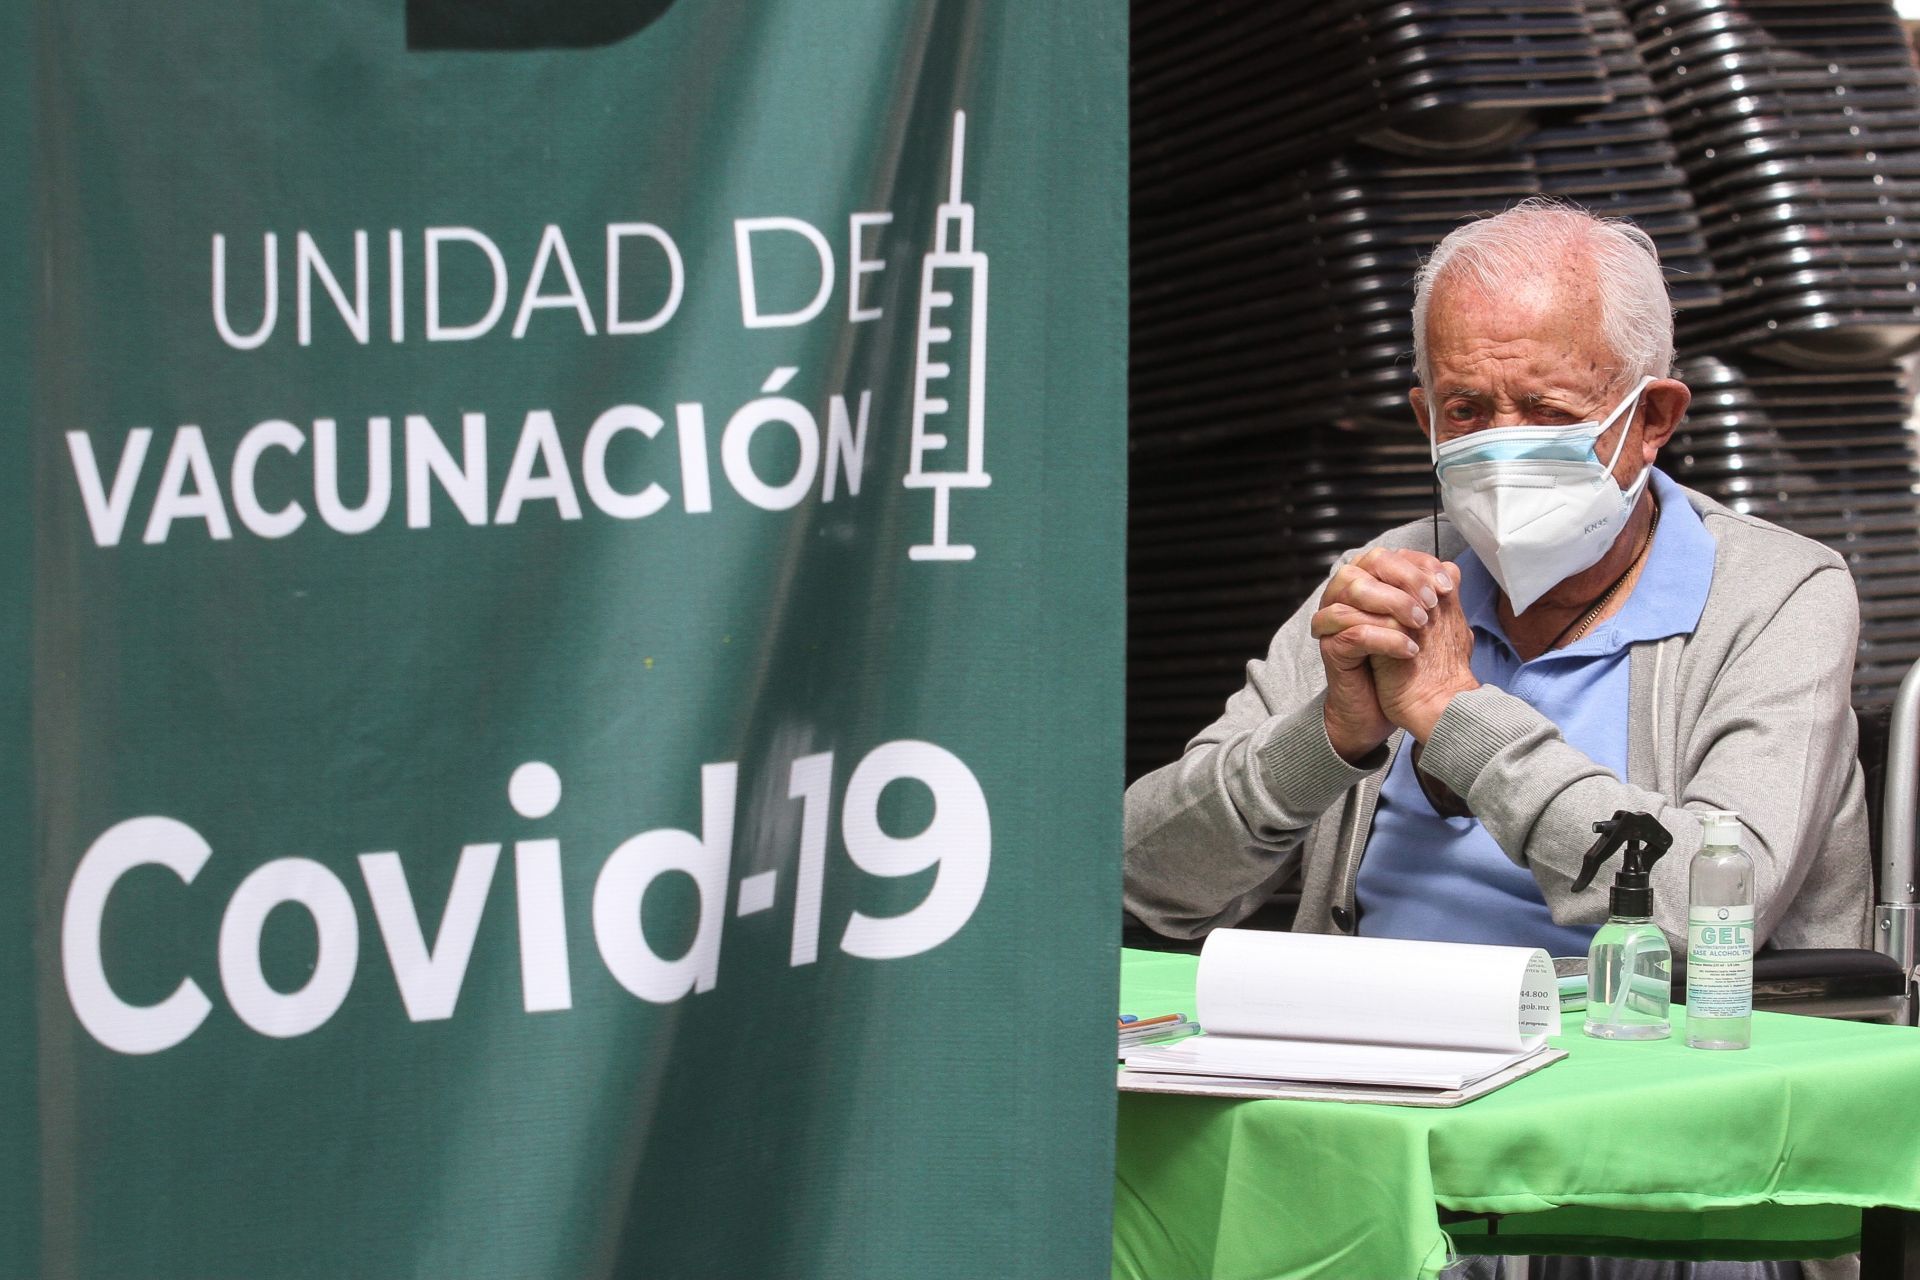 CIUDAD DE MÉXICO, 16FEBRERO2021.- Continúa la vacunación contra COVID-19 del la farmacéutica AstraZeneca en adultos de 60 años y mayores, esto en las alcaldías Cuajimalpa, Milpa Alta y Magdalena Contreras. En el último reporte, publicado por el gobierno de la ciudad se informó que se contabilizaron 30 mil 332 adultos mayores vacunados en las alcaldías antes mencionadas. 
FOTO: ROGELIO MORALES /CUARTOSCURO.COM